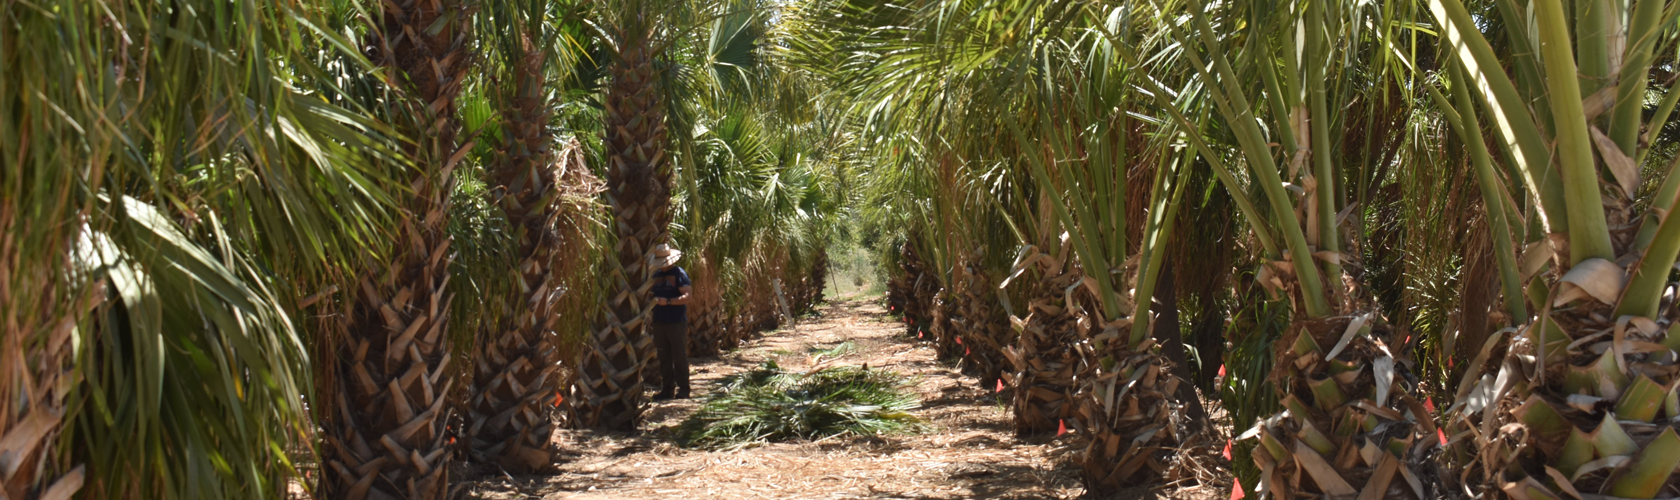 Row of Sabal palm trees at Madera grove